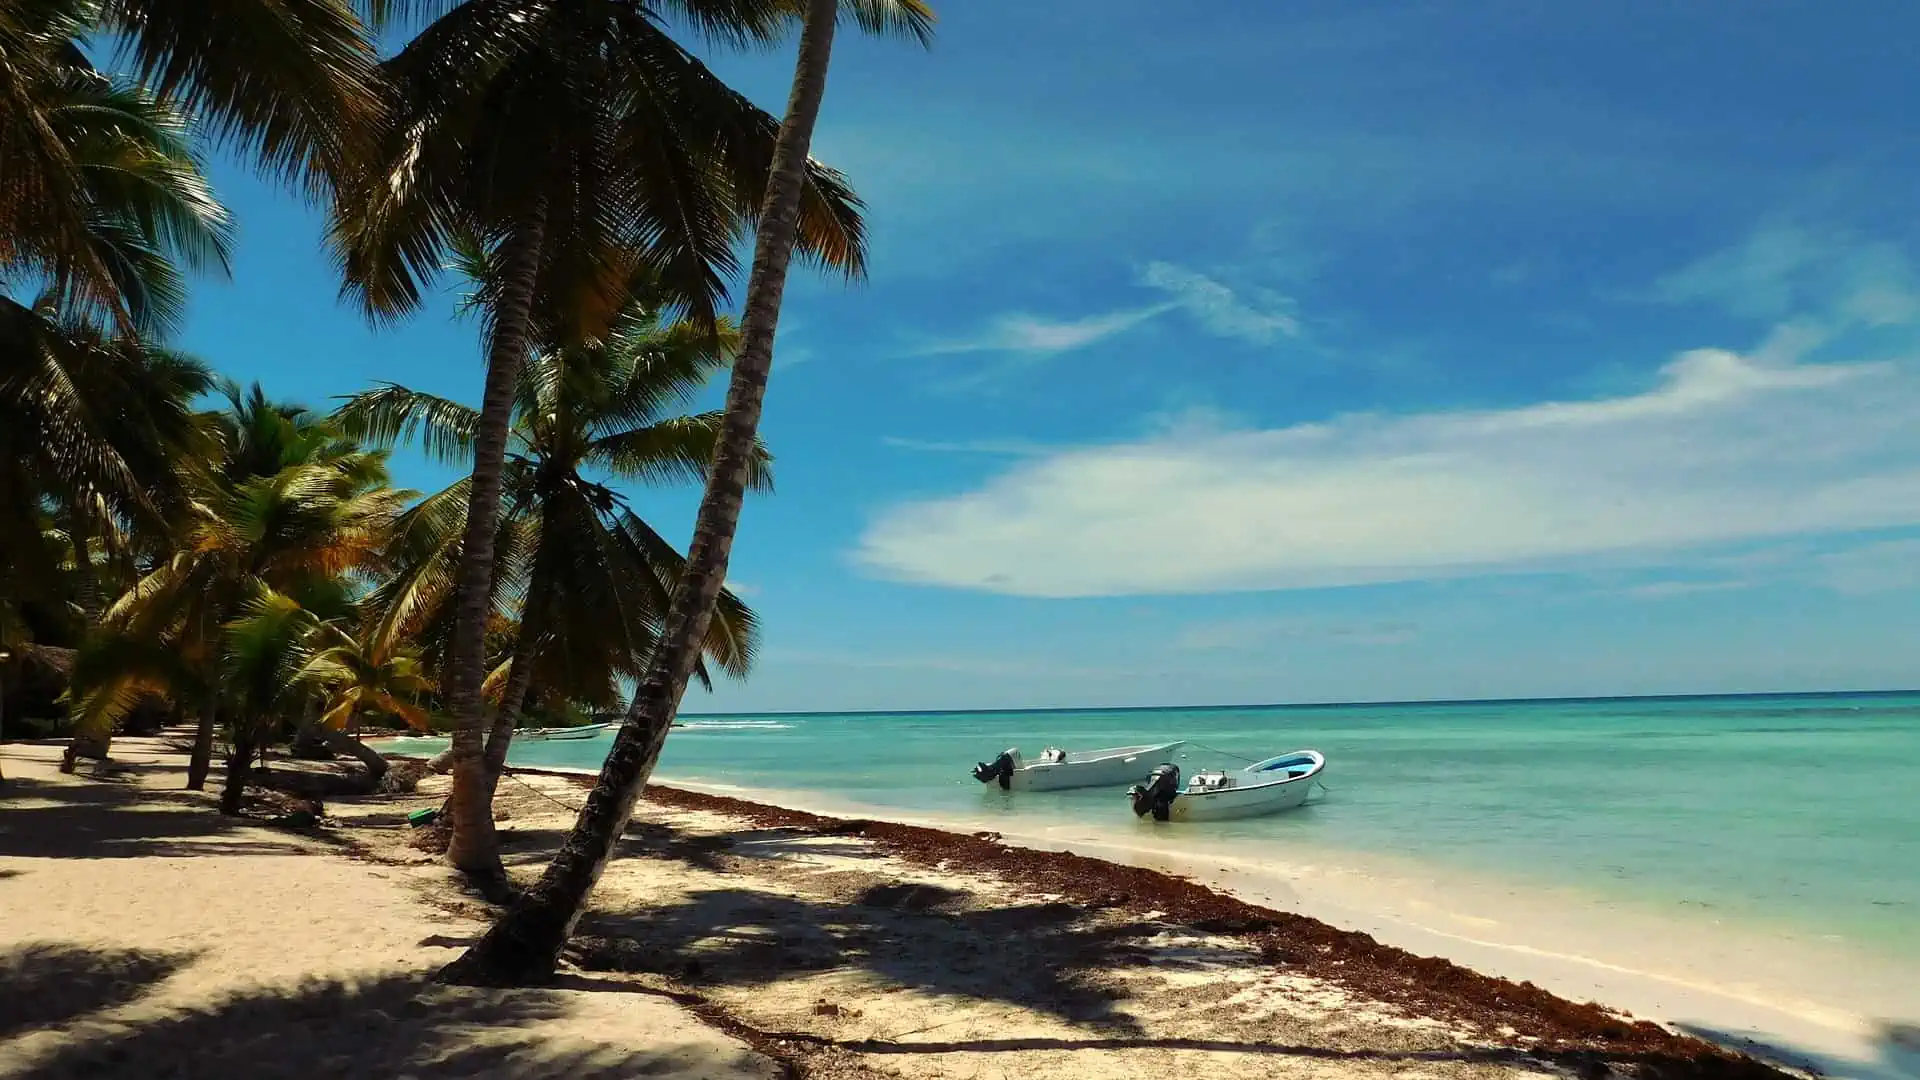 Karibikstrand auf der Insel Saona in der Dominikanischen Republik.